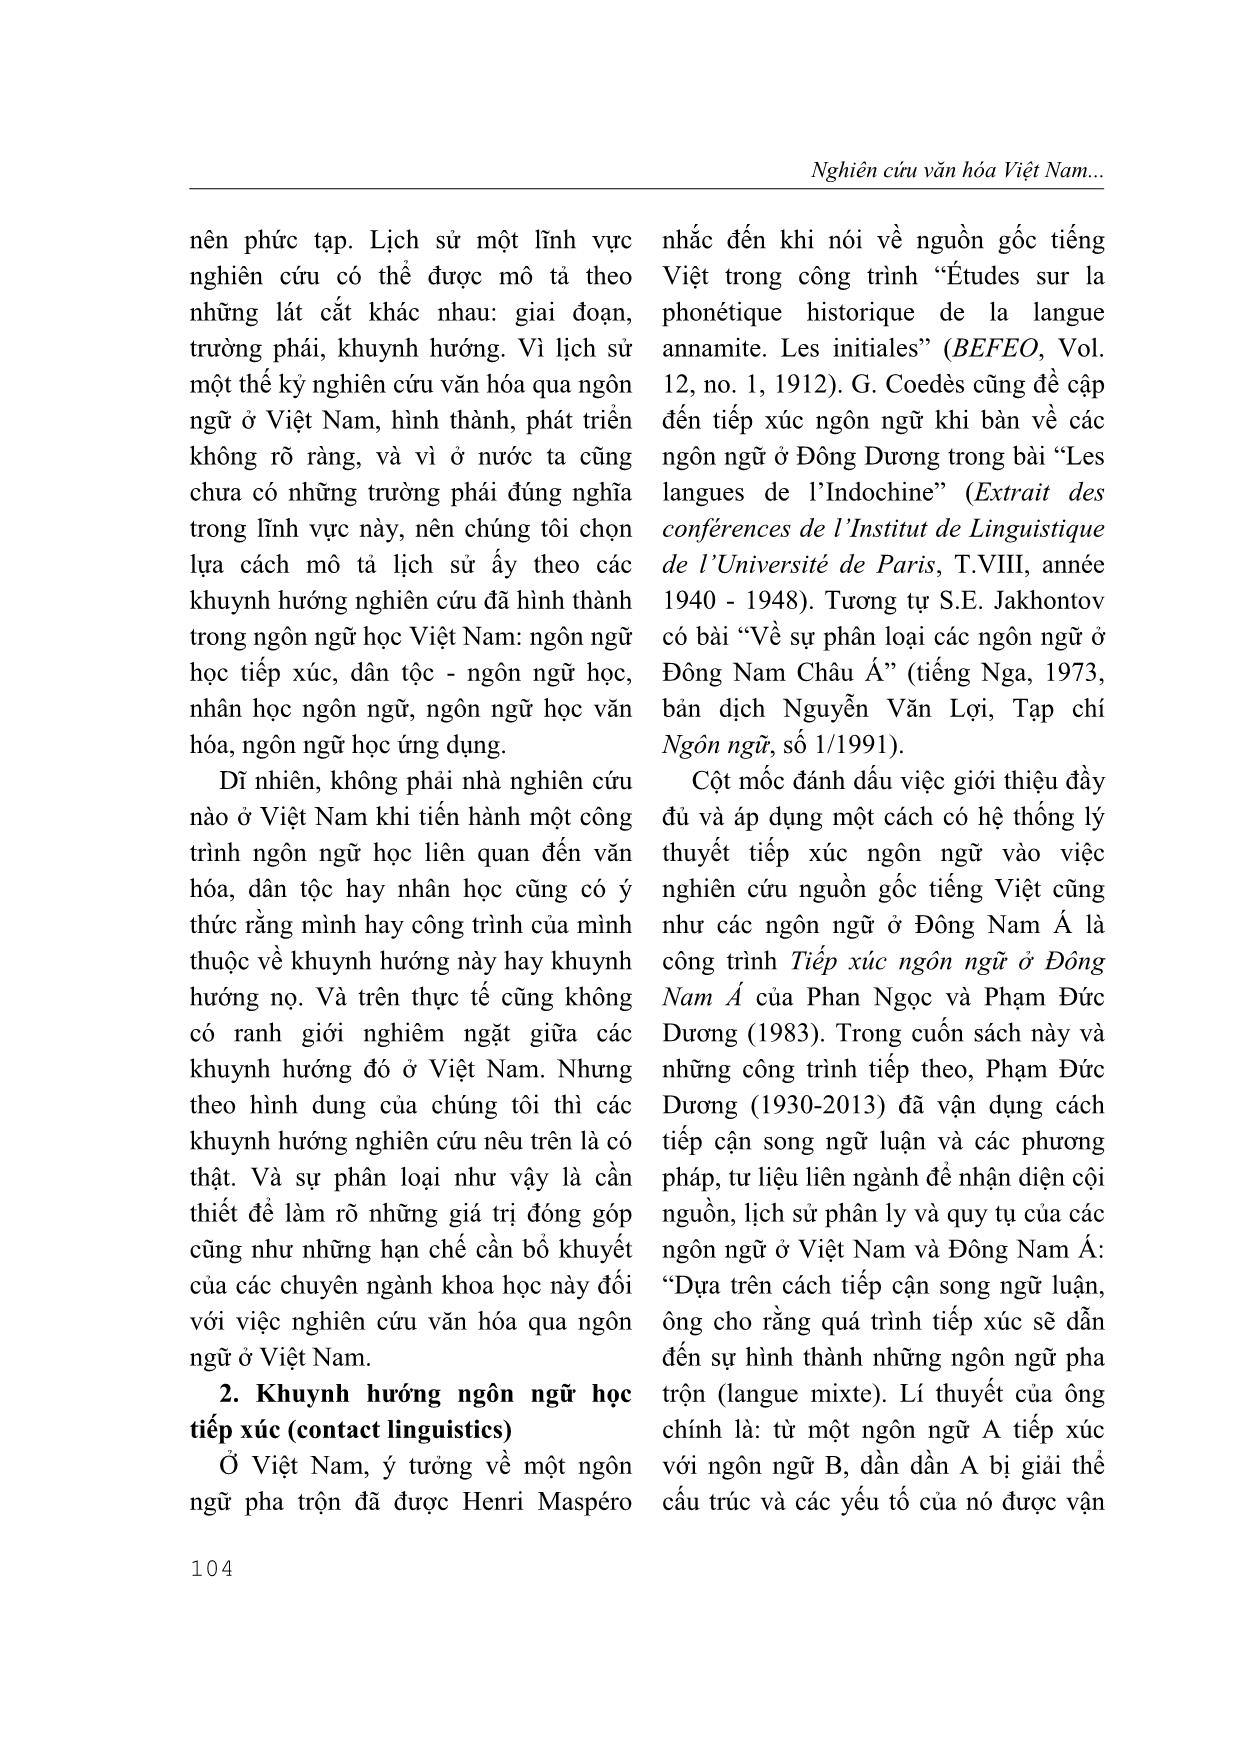 Nghiên cứu văn hóa Việt Nam qua ngôn ngữ trang 2